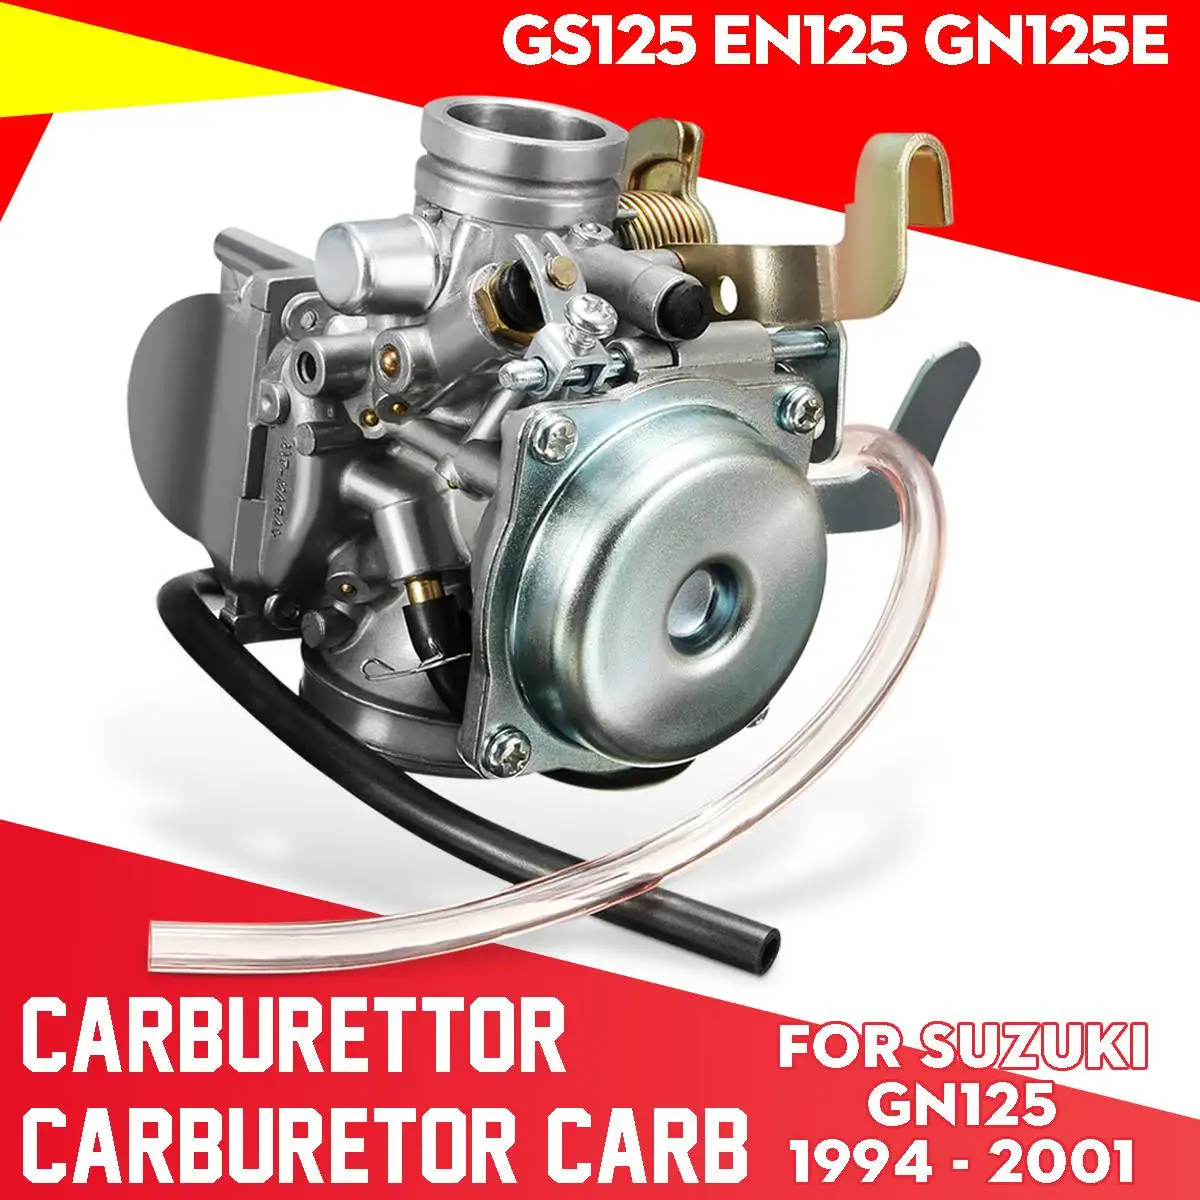 Motorcykel Karburator Karburator Carb For Suzuki GN125 1994 - 2001 GS125 EN125 GN125E